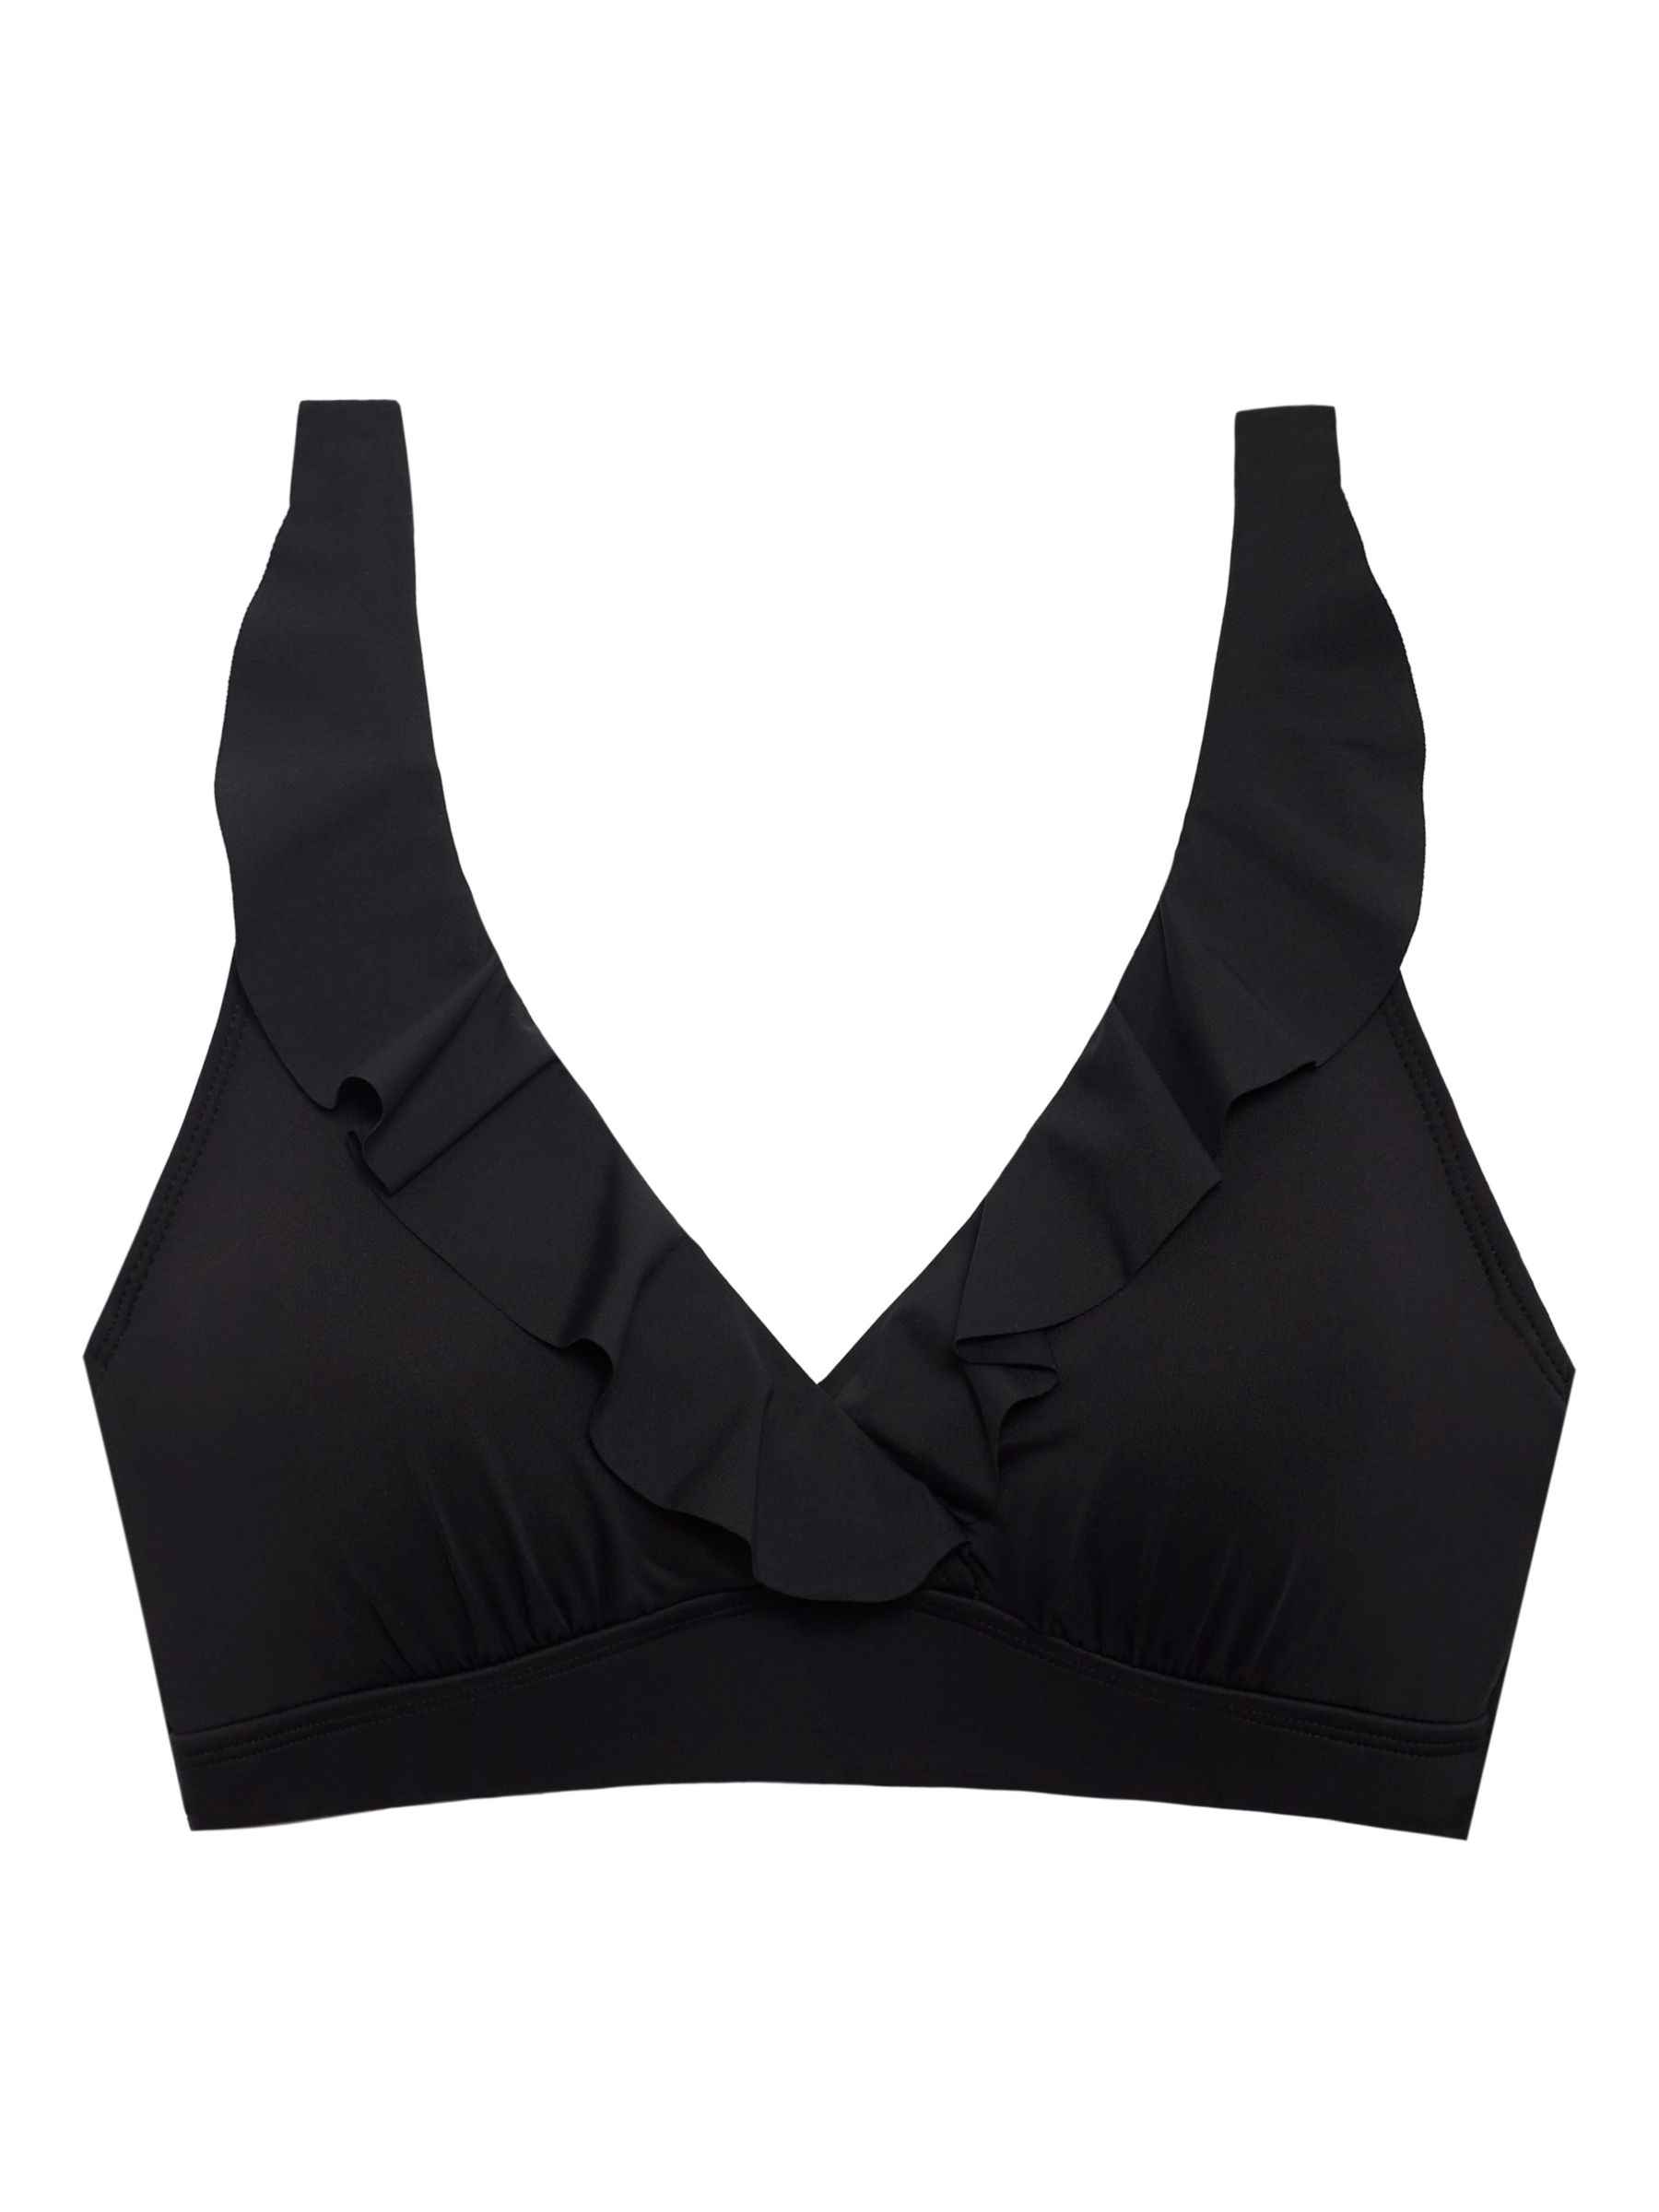 Lauren Ralph Lauren Ruffle Front Bikini Top, Black, 8